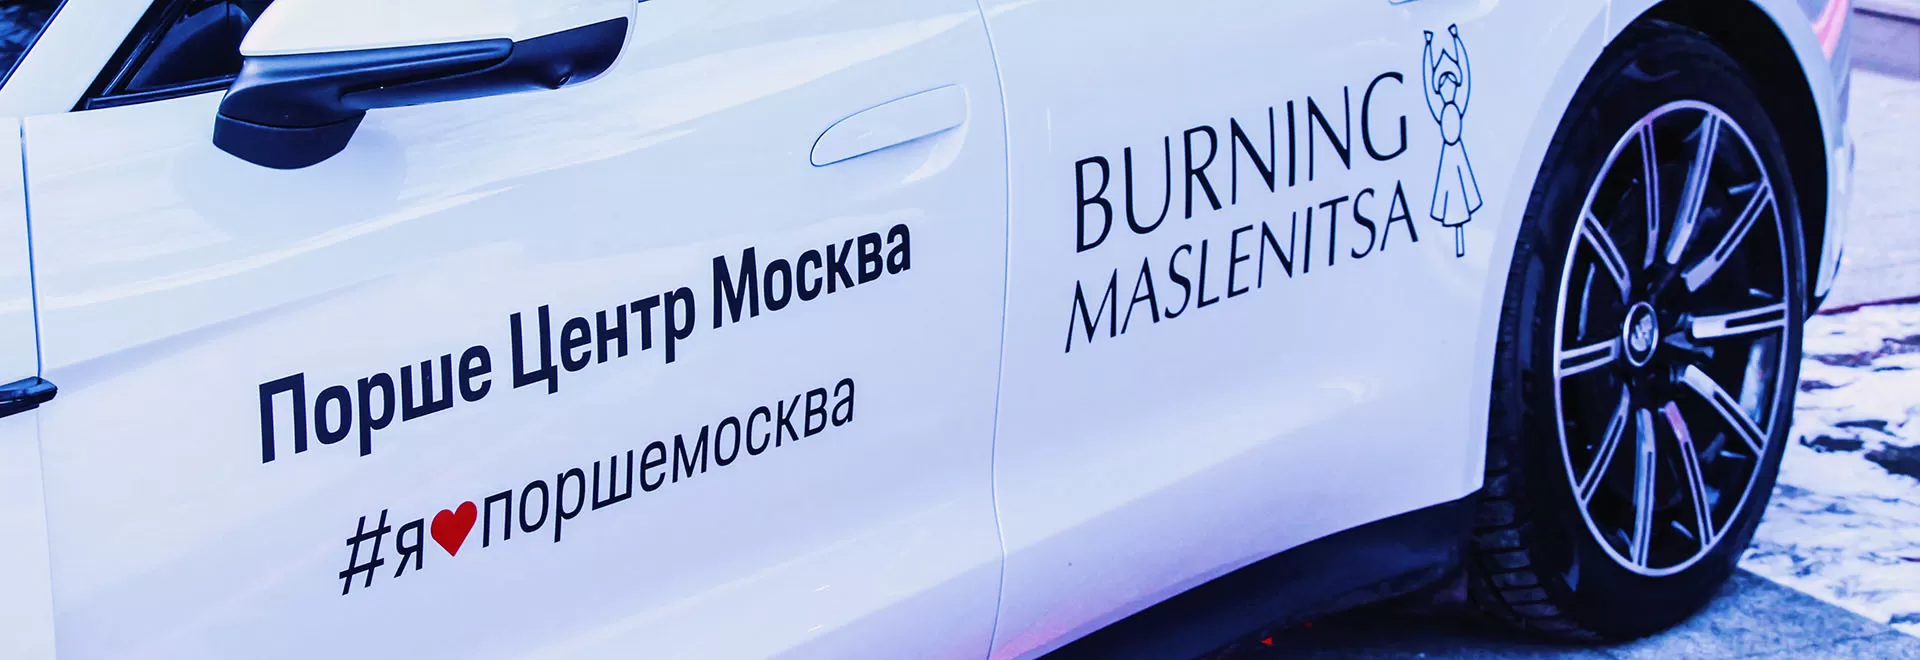 Порше Центр Москва стал партнером мероприятия Burning Maslenitsa.